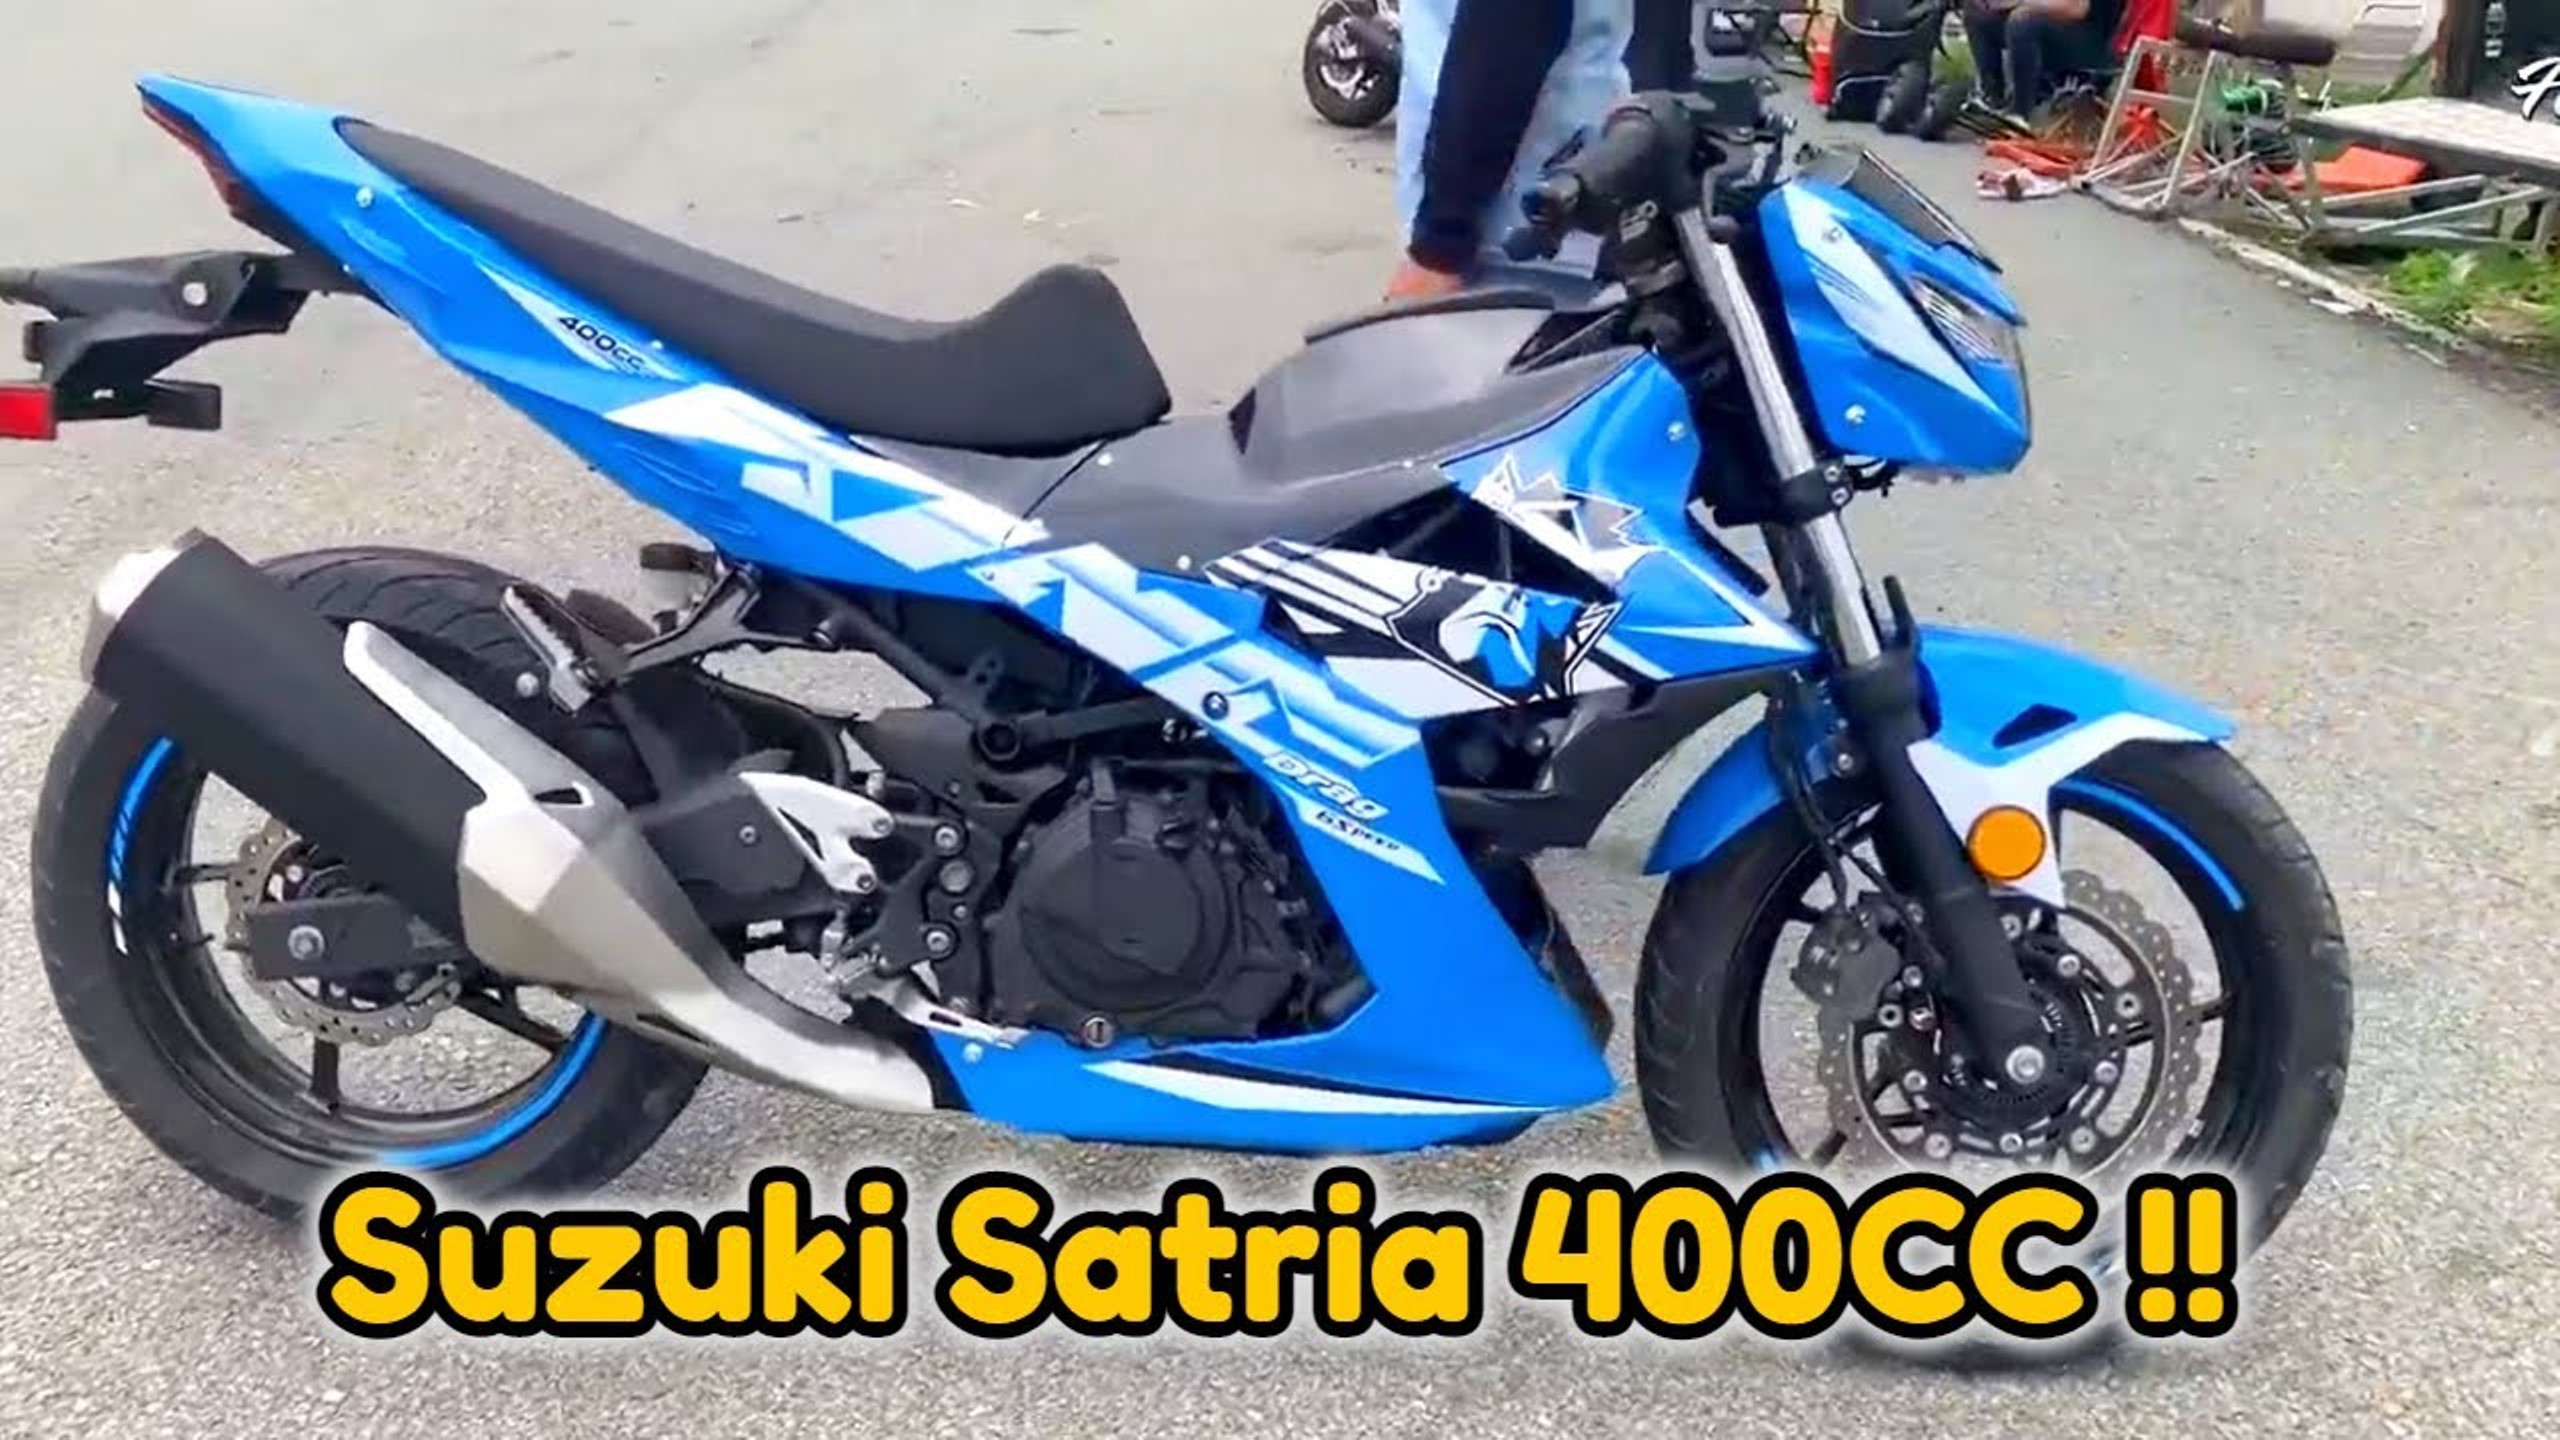 Heboh! Suzuki Satria FU 400cc Pakai 2 Silinder Meluncur di Indonesia, Benarkah?